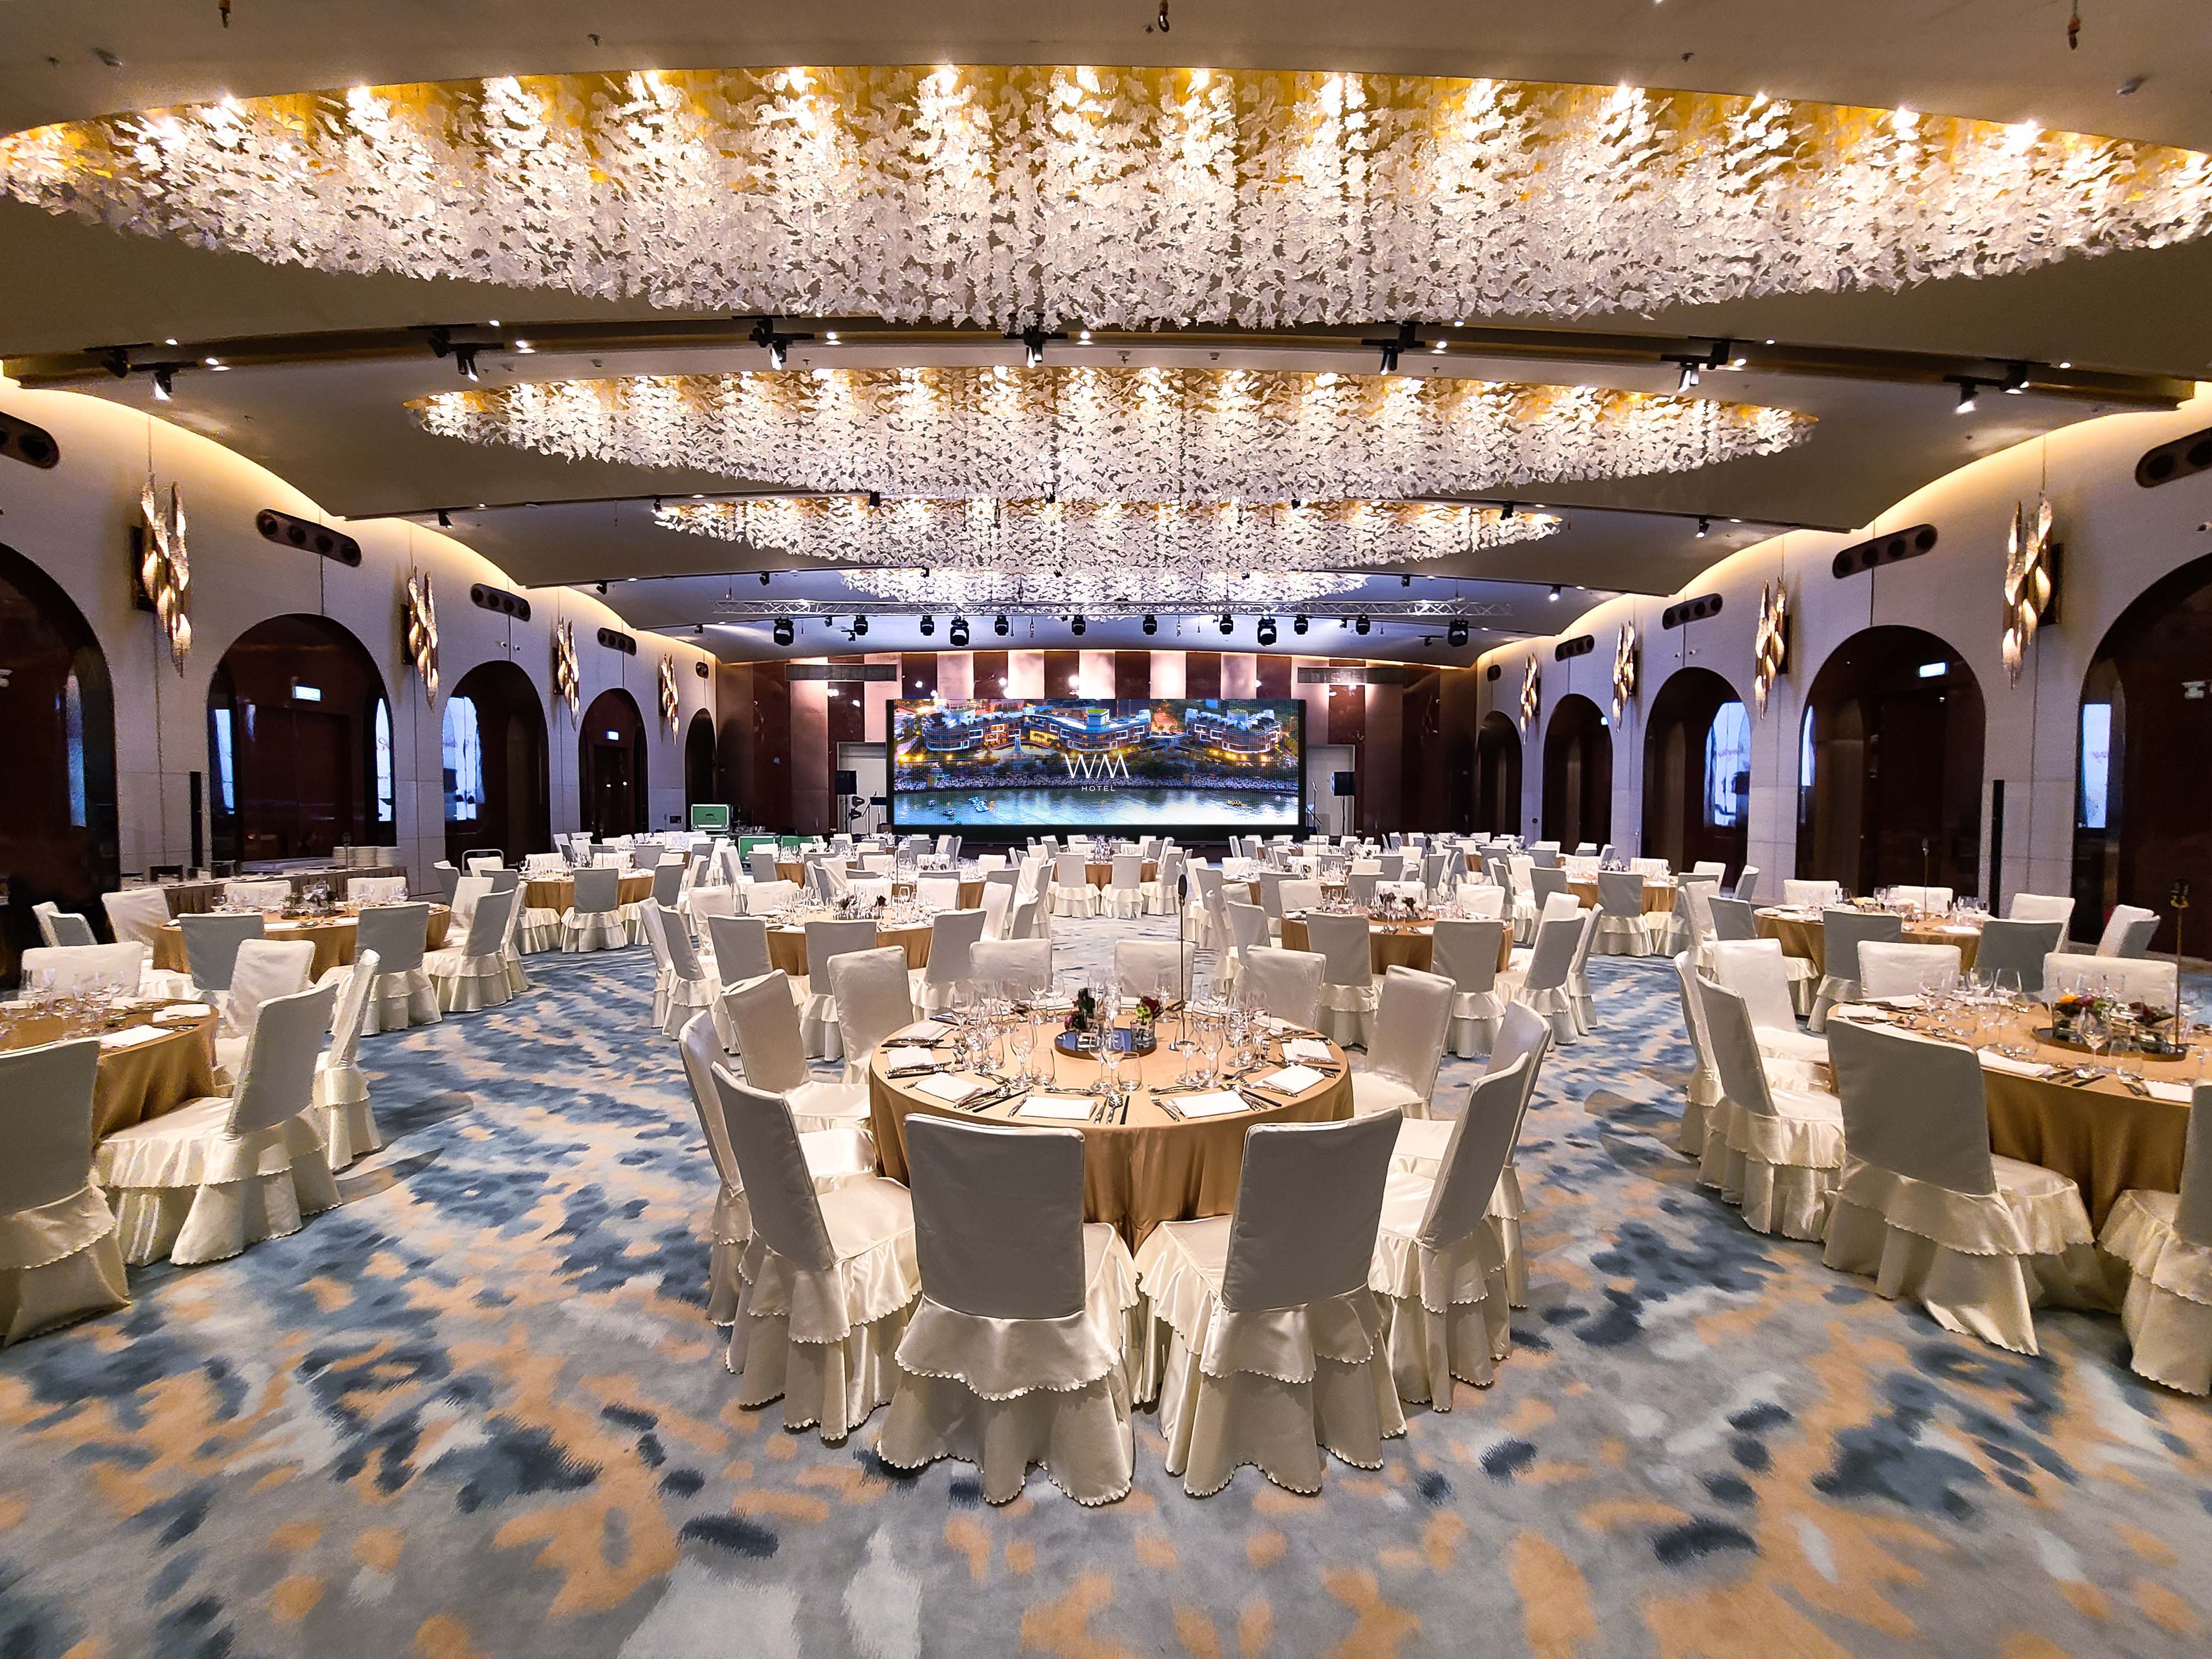 WM Hotel Hong Kong, Vignette Collection - WM Grand Ballroom